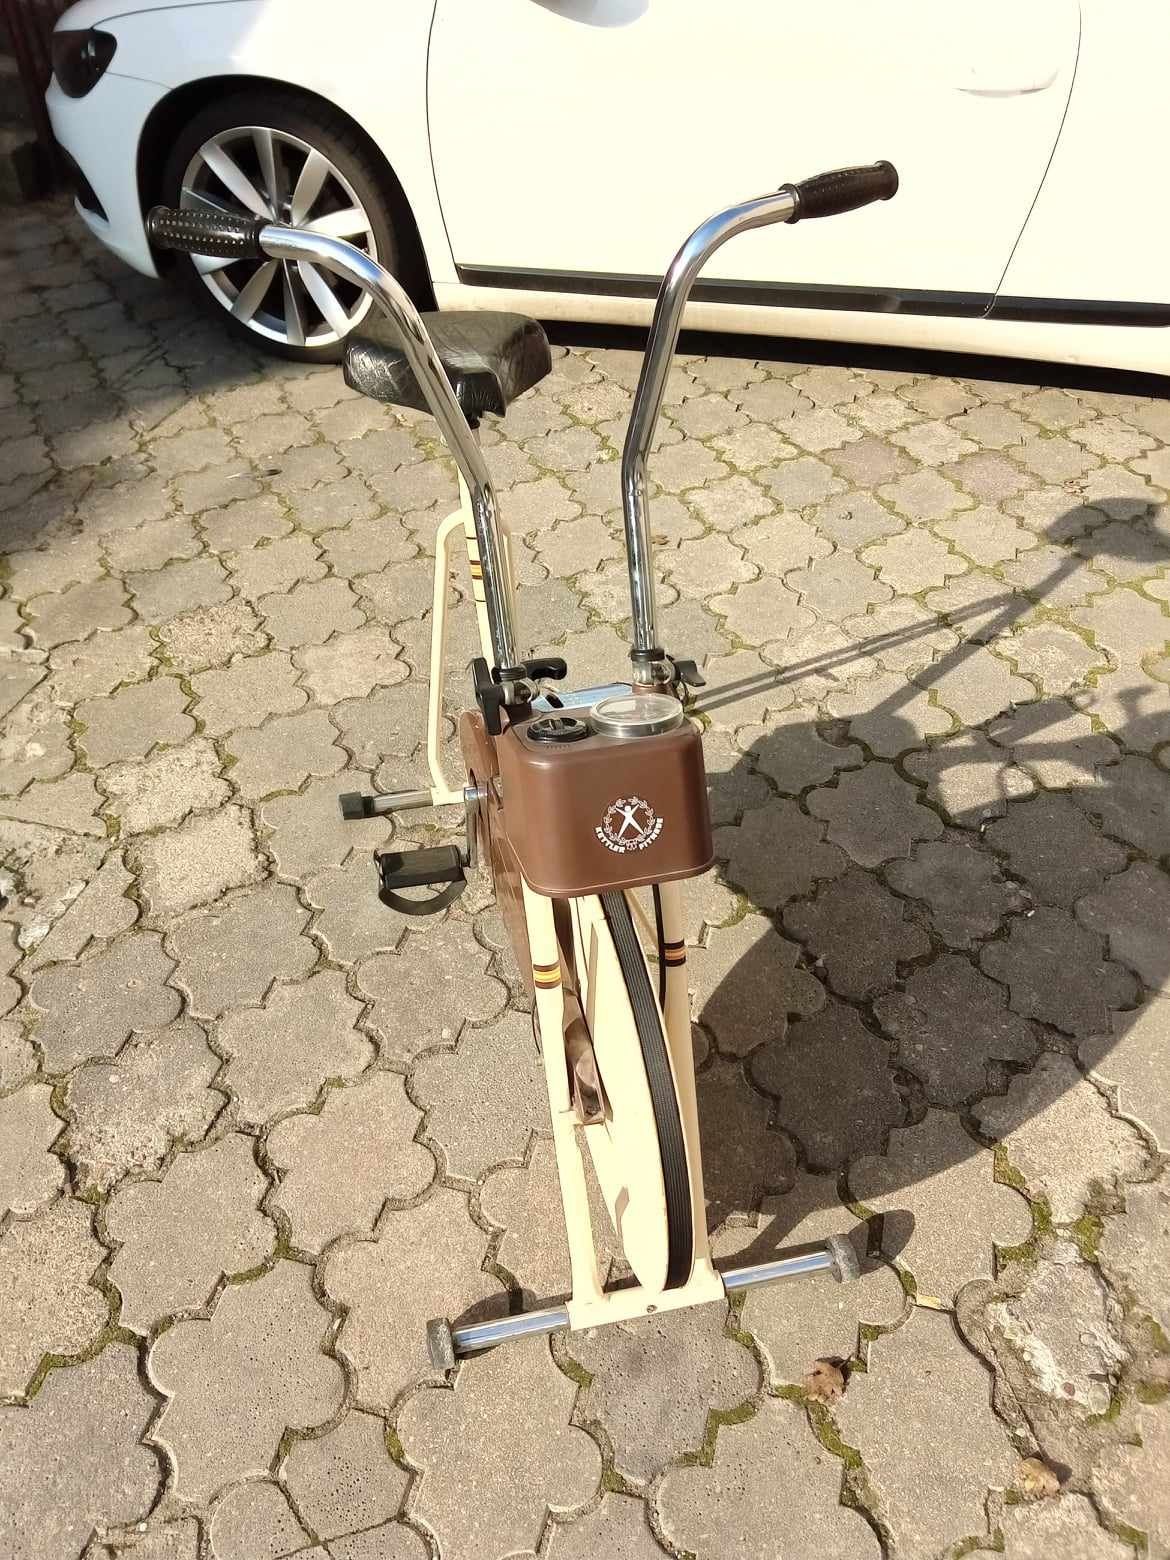 Sprzedam rower treningowo - rehabilitacyjny Kettler model Silvretta